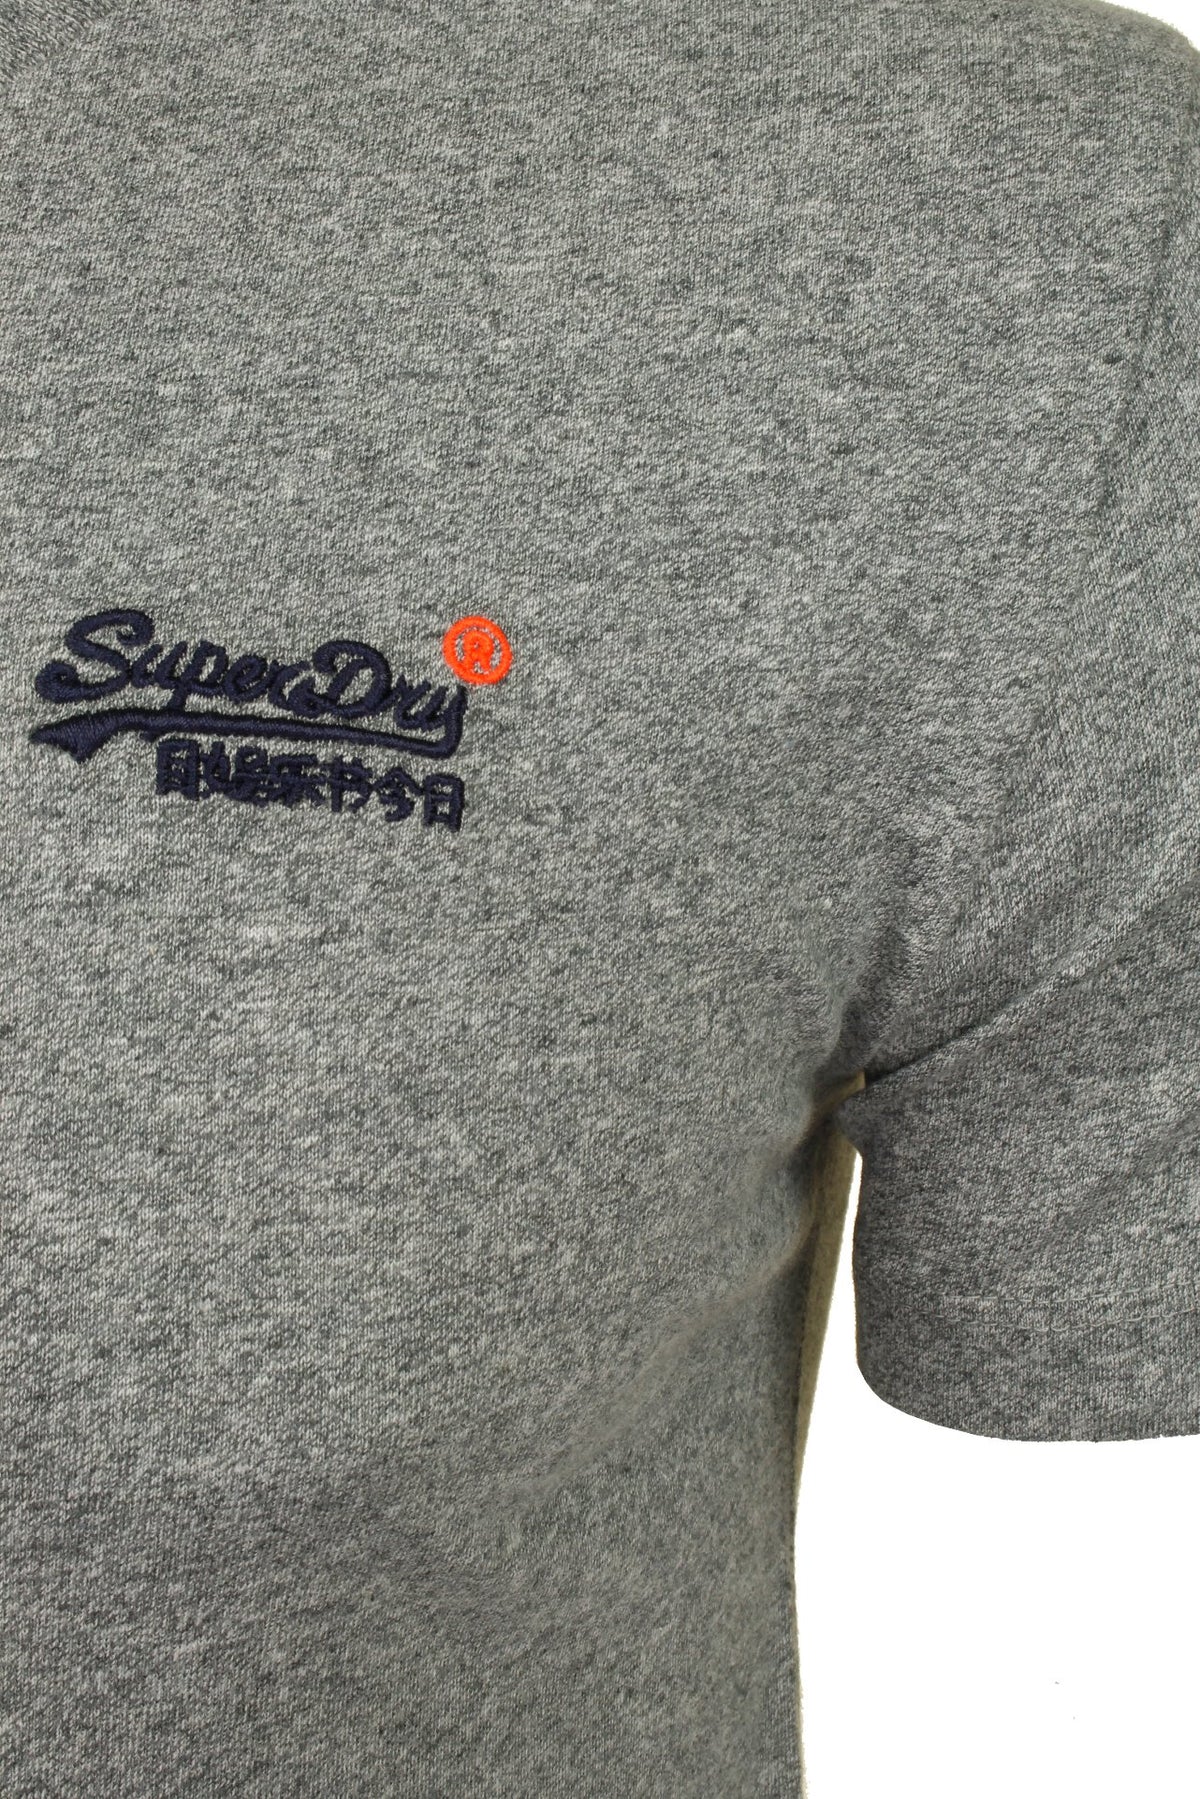 Superdry Men's 'Orange Label' V Neck T-Shirt - Short Sleeved, 02, M1010209A, Grey Marl